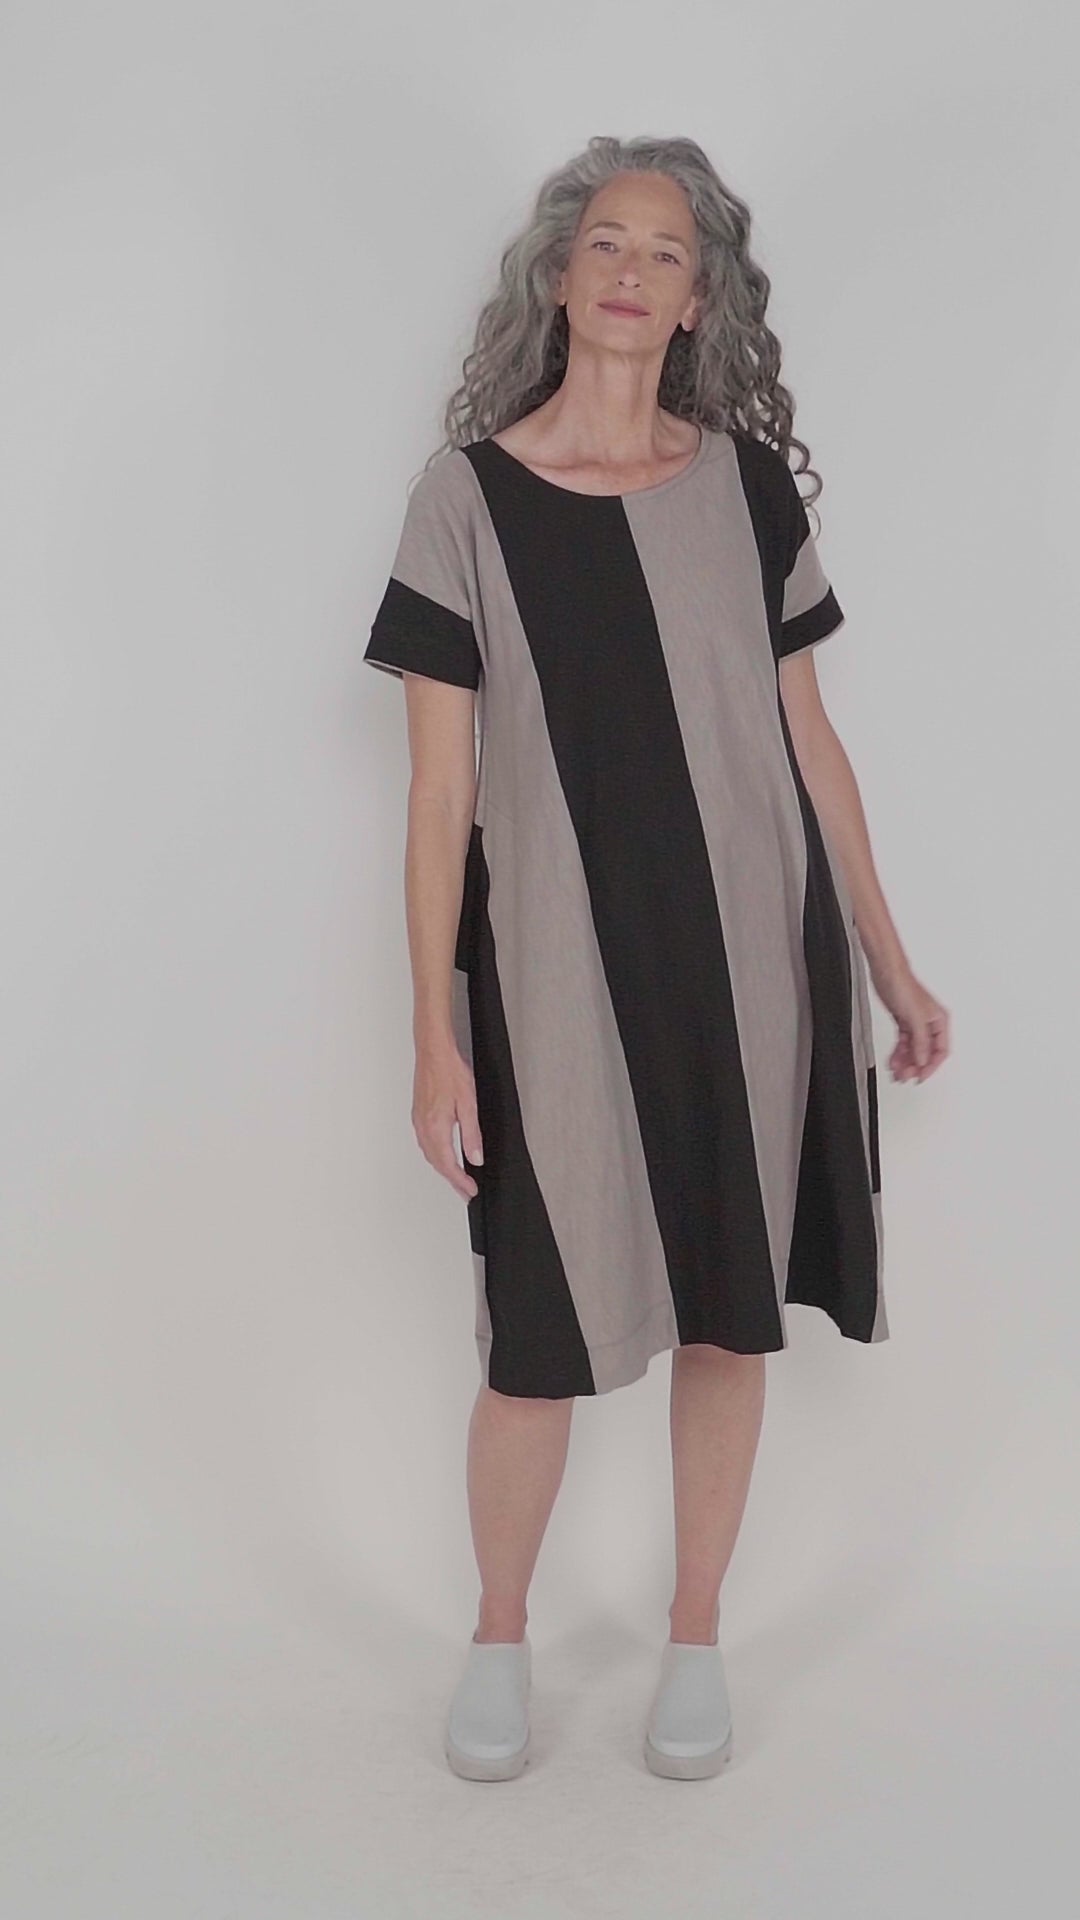 Urban Anna Stripe A-line Maxi Dress, Ash/black